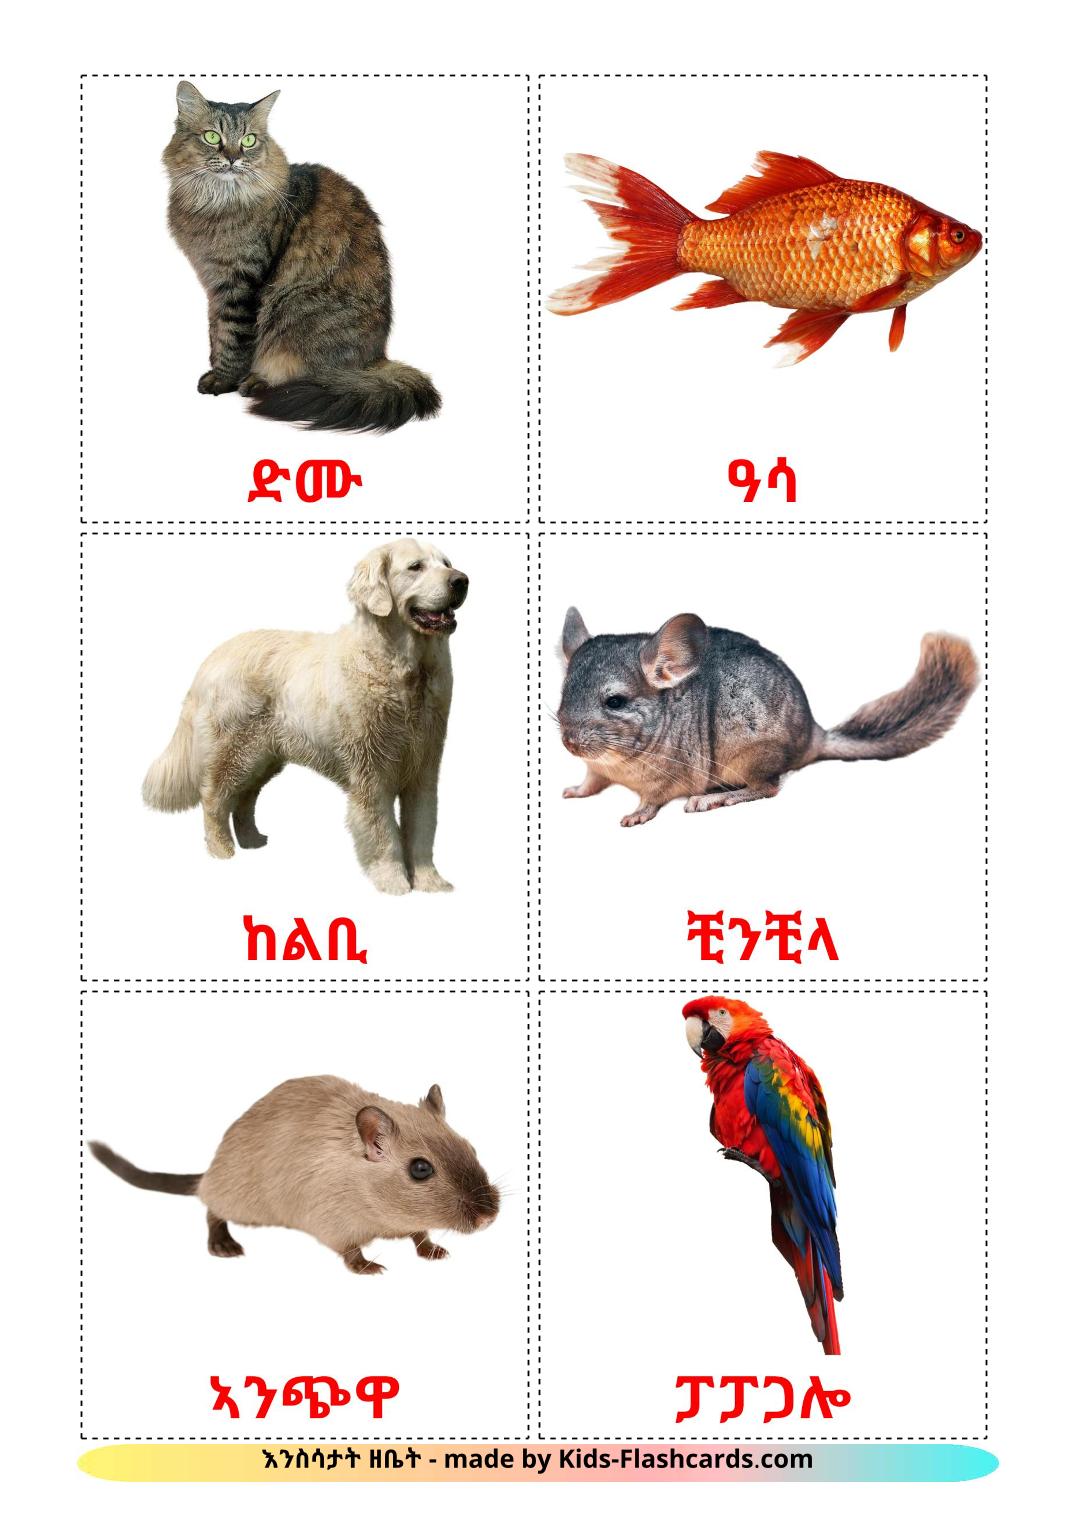 Huisdieren - 10 gratis printbare tigrigna(eritrea)e kaarten